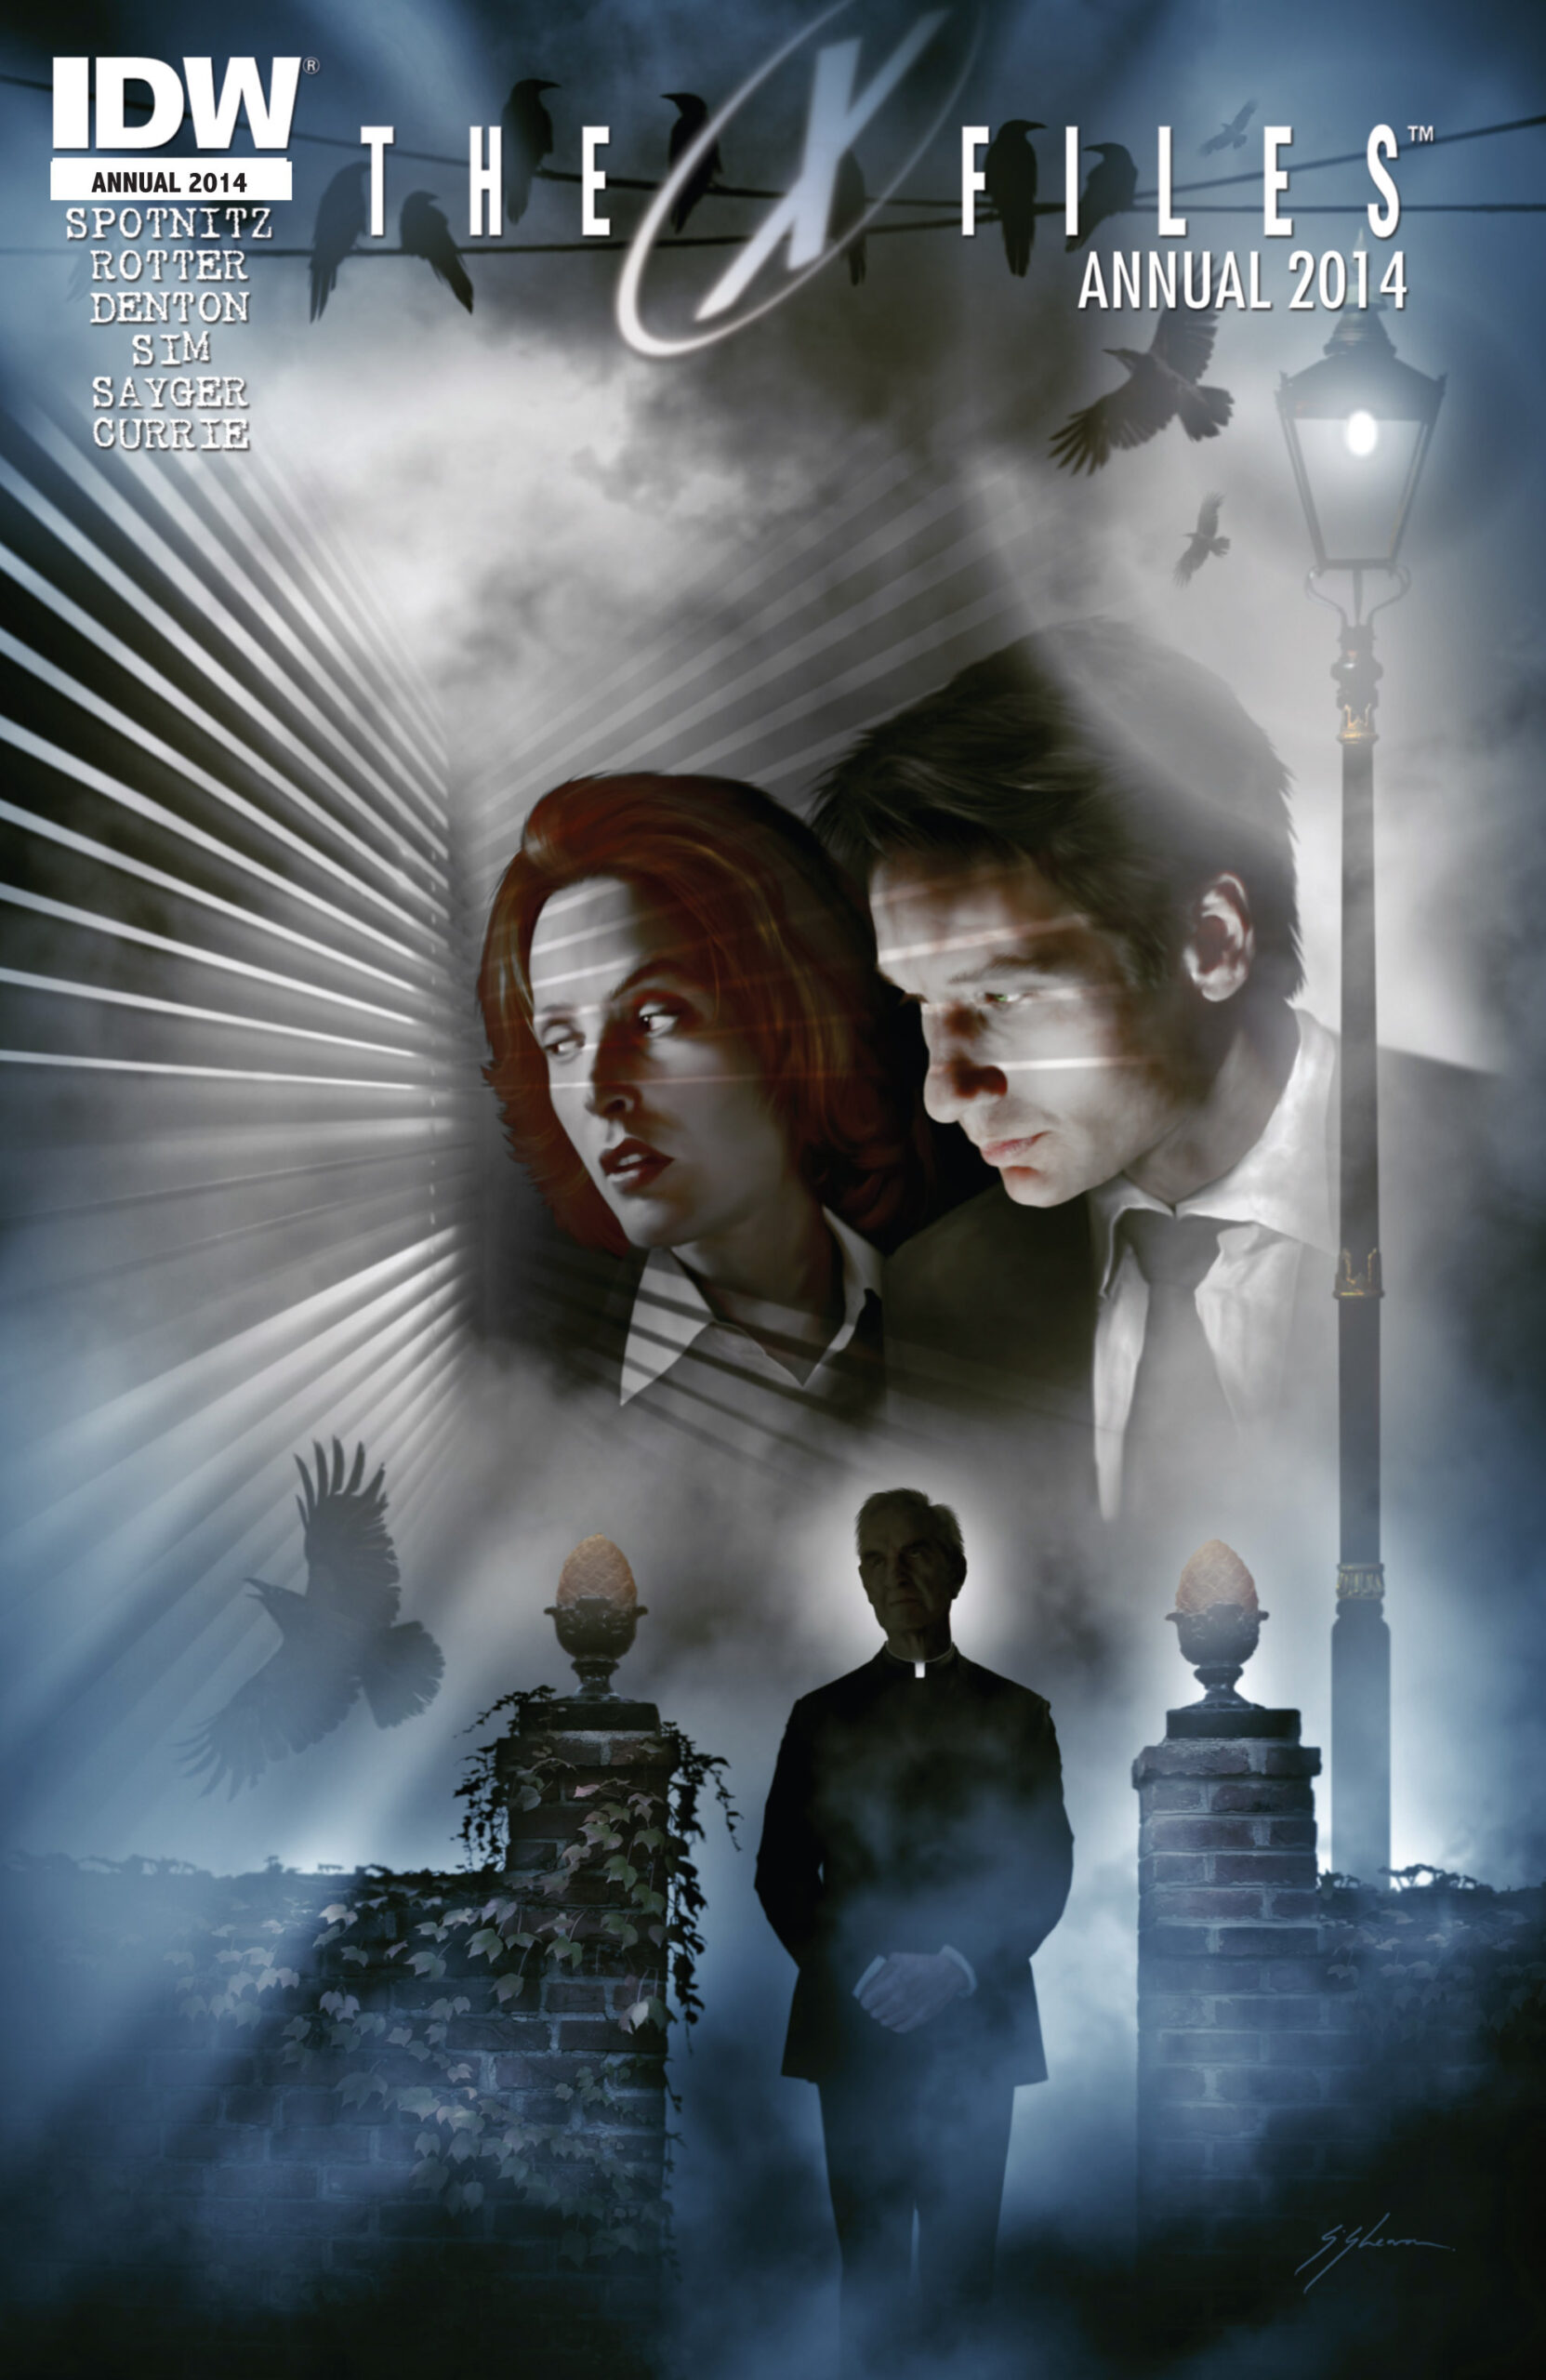 x-files en comics - X-Files Annual : la critique The X Files Annual 2014 Digital Darkness Empire 001 scaled